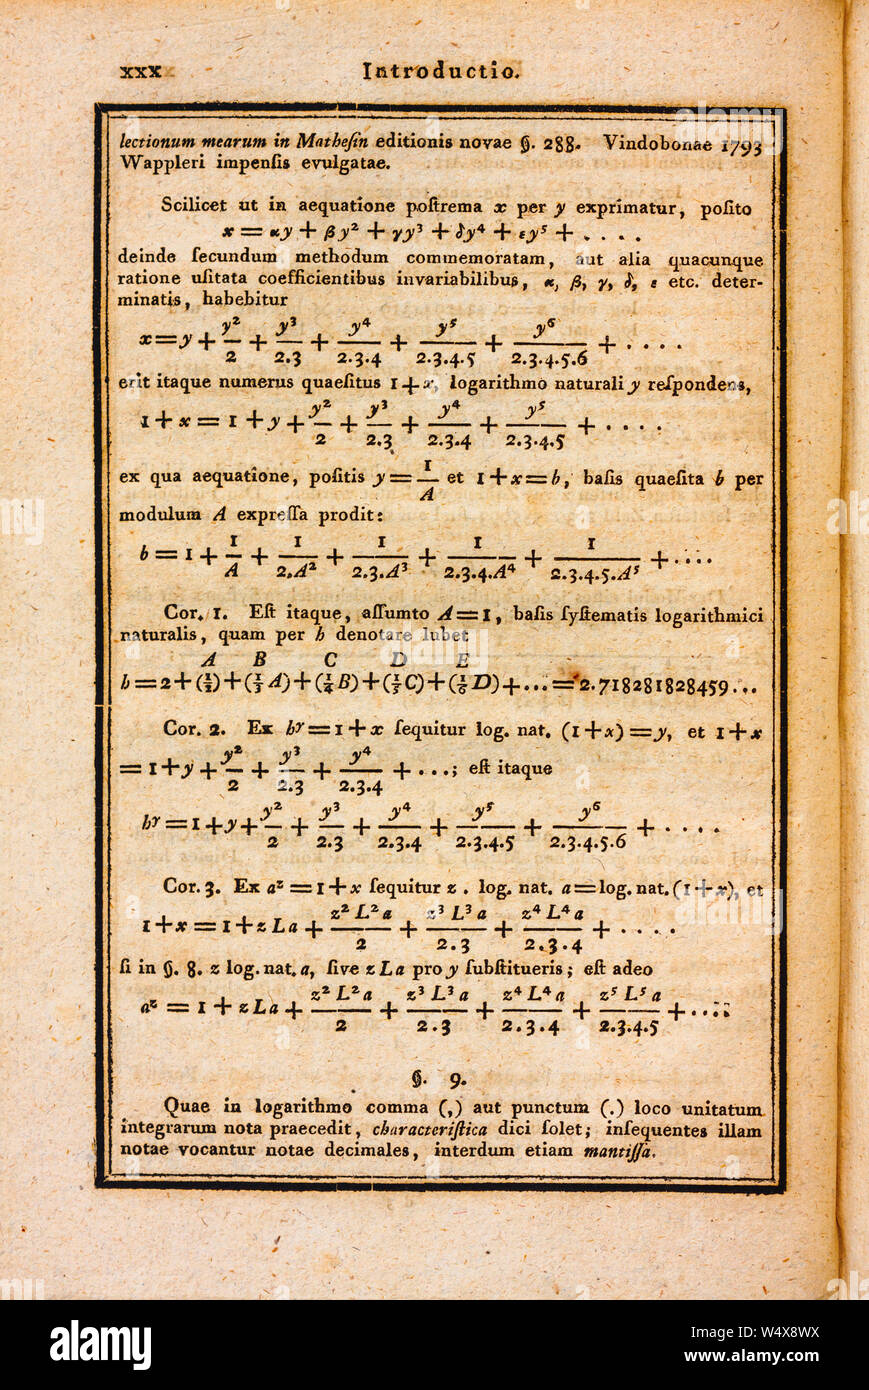 Pagina ingiallito di 200 anni vecchio libro di matematica con complessi calcoli matematici, equazioni e formule e spiegazioni in latino. Foto Stock